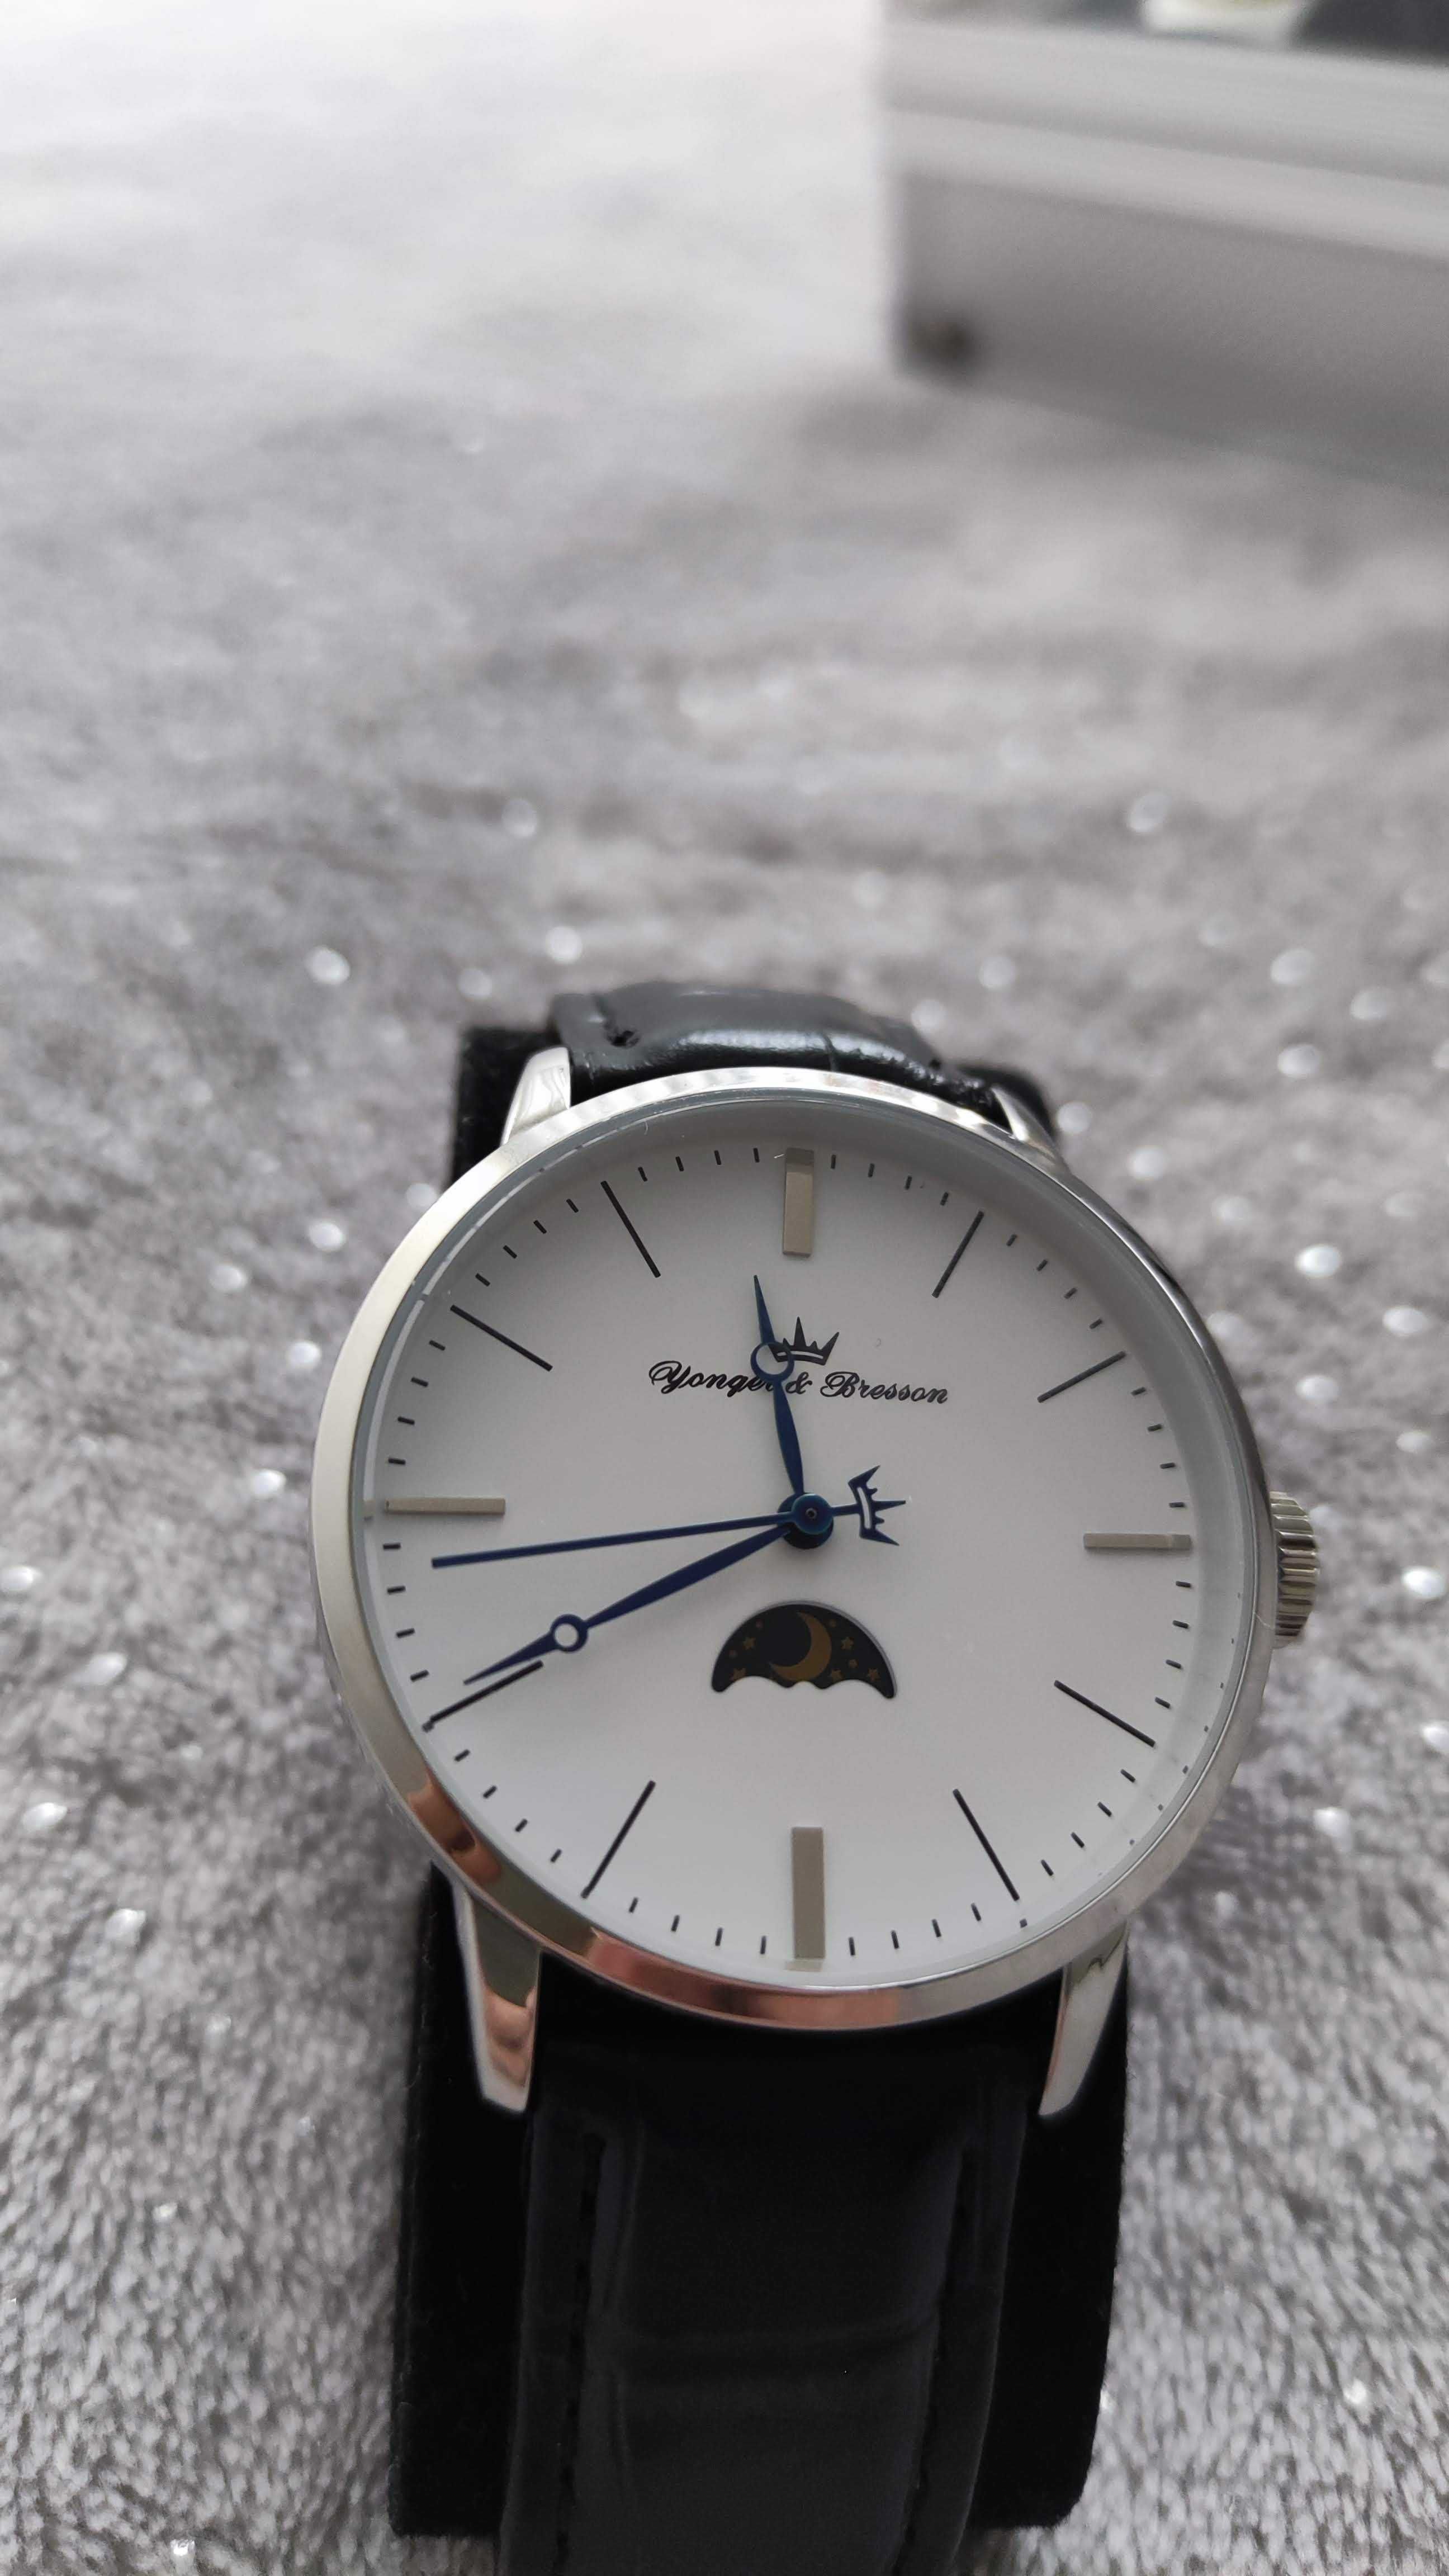 Ръчен часовник (Yonger & Bresson) Франция